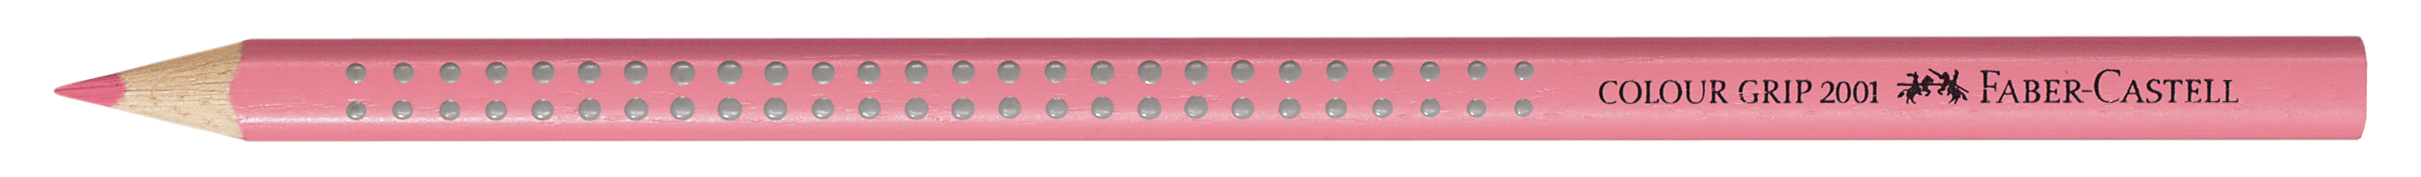 FABER-CASTELL Crayon de couleur Colour Grip 112429 rose rose